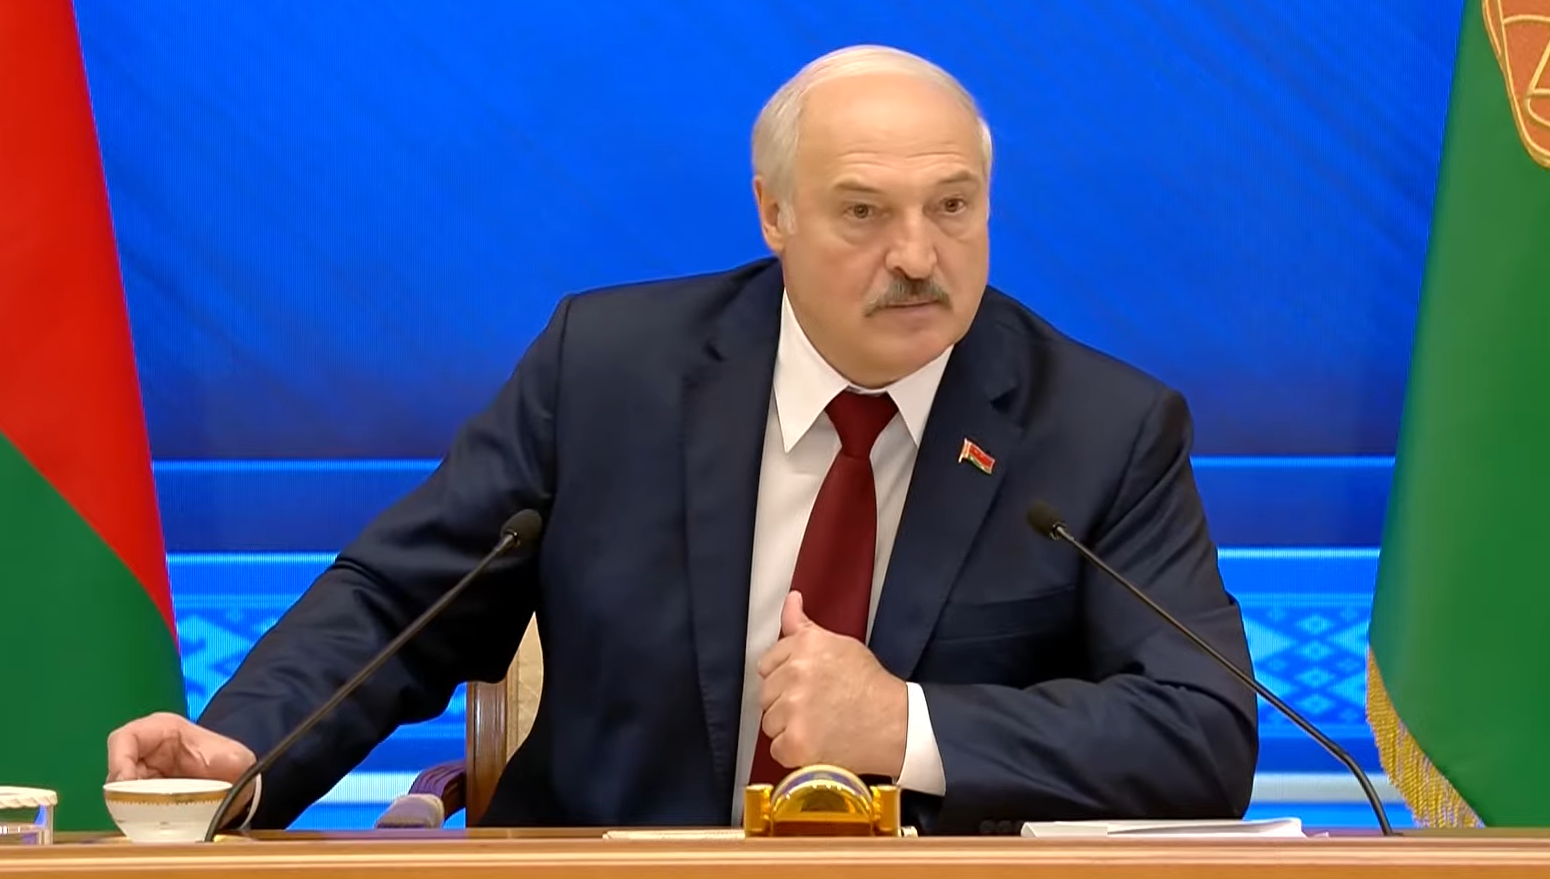 Лукашенко визнав, що білоруські війська «могли допомагати» мігрантам потрапити в ЄС